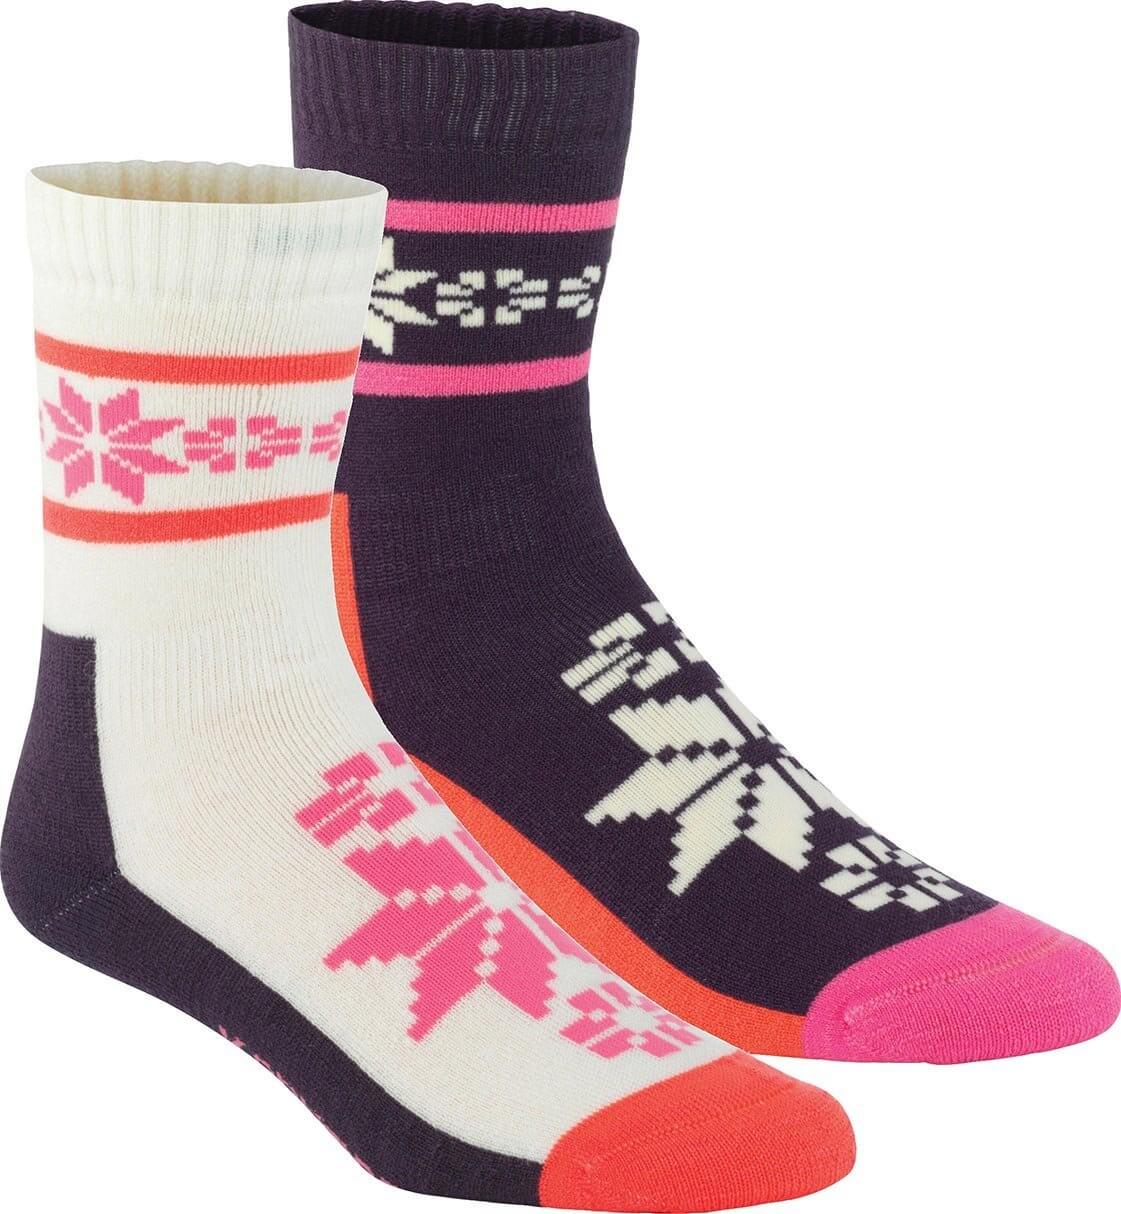 Dámské extra měkké teplé vlněné ponožky Kari Traa Rusa Wool Sock 2pk